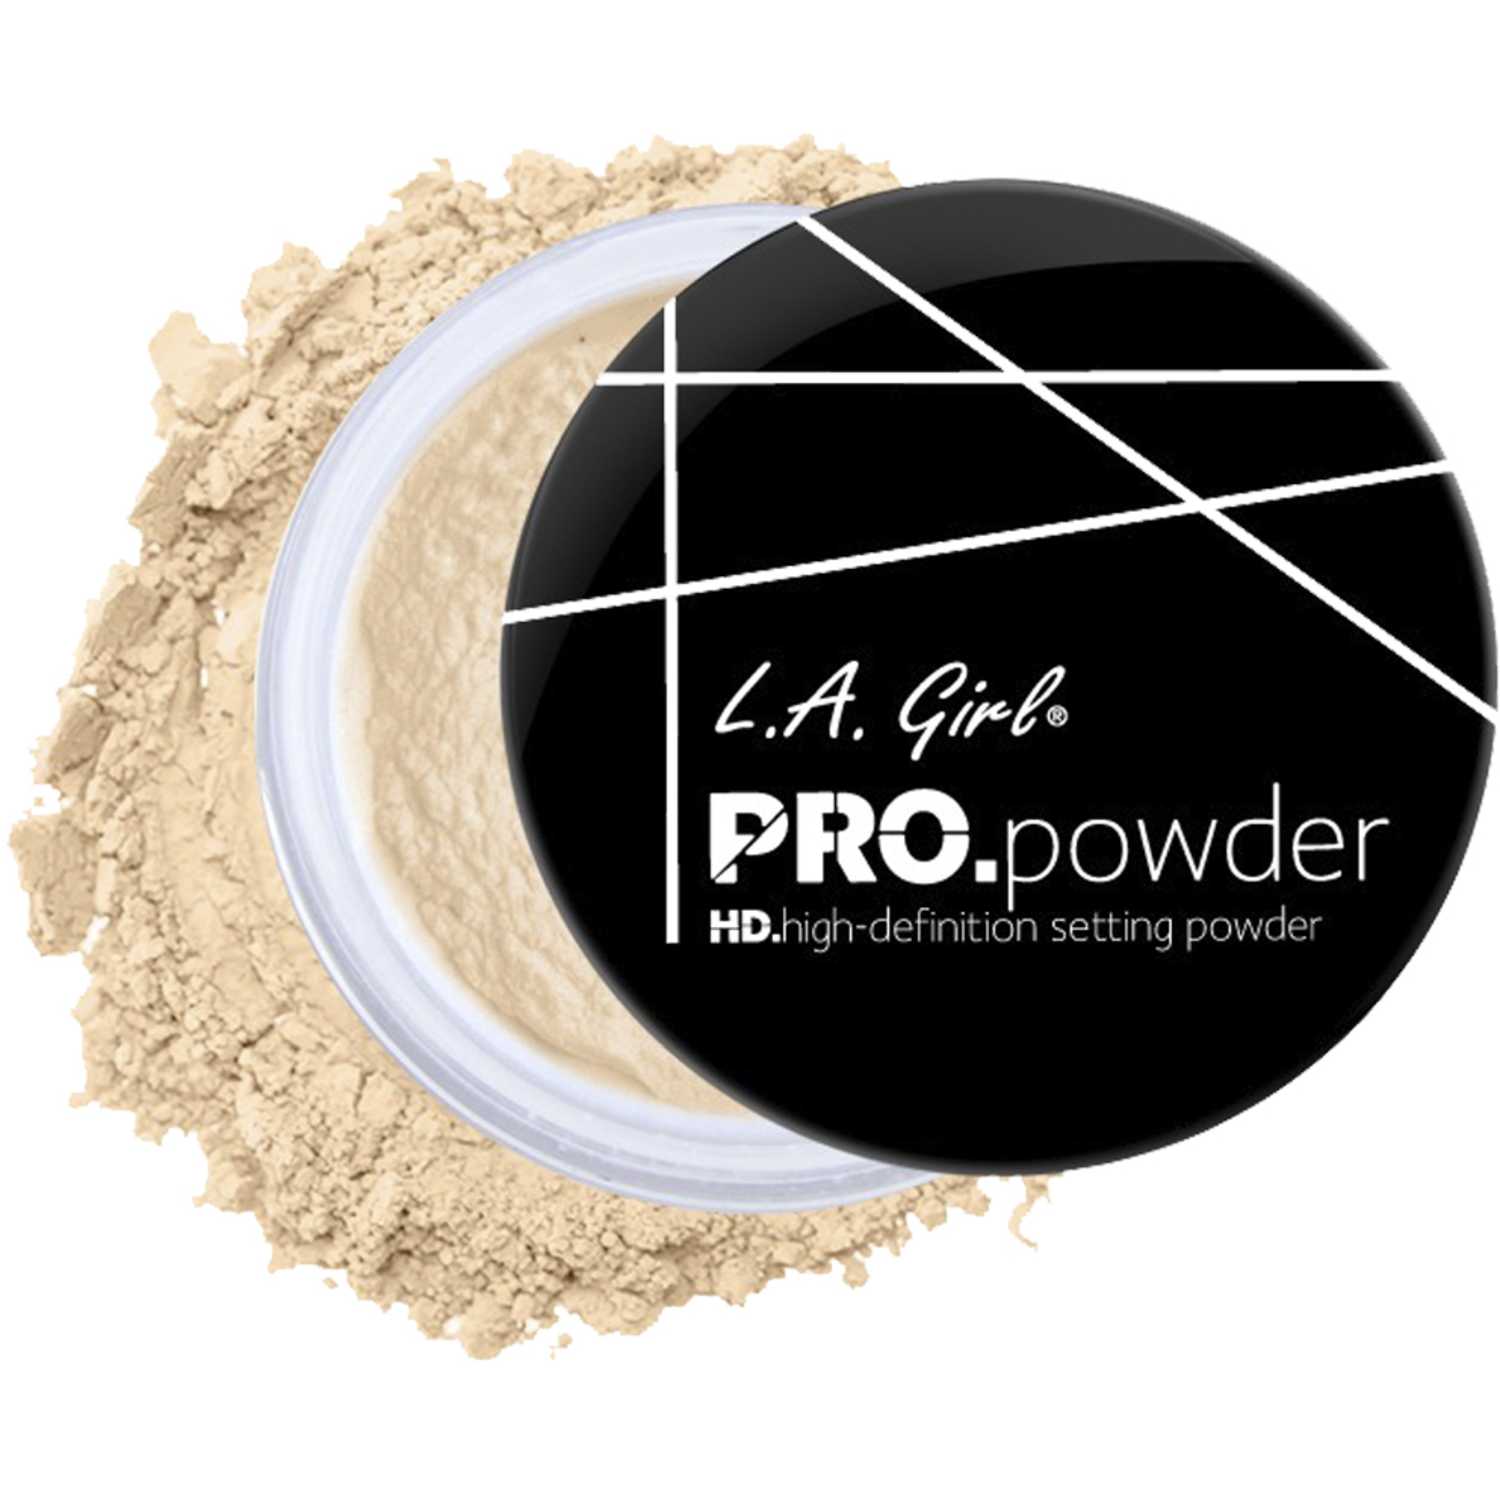 Phấn phủ bột L.A.Girl Pro.powder